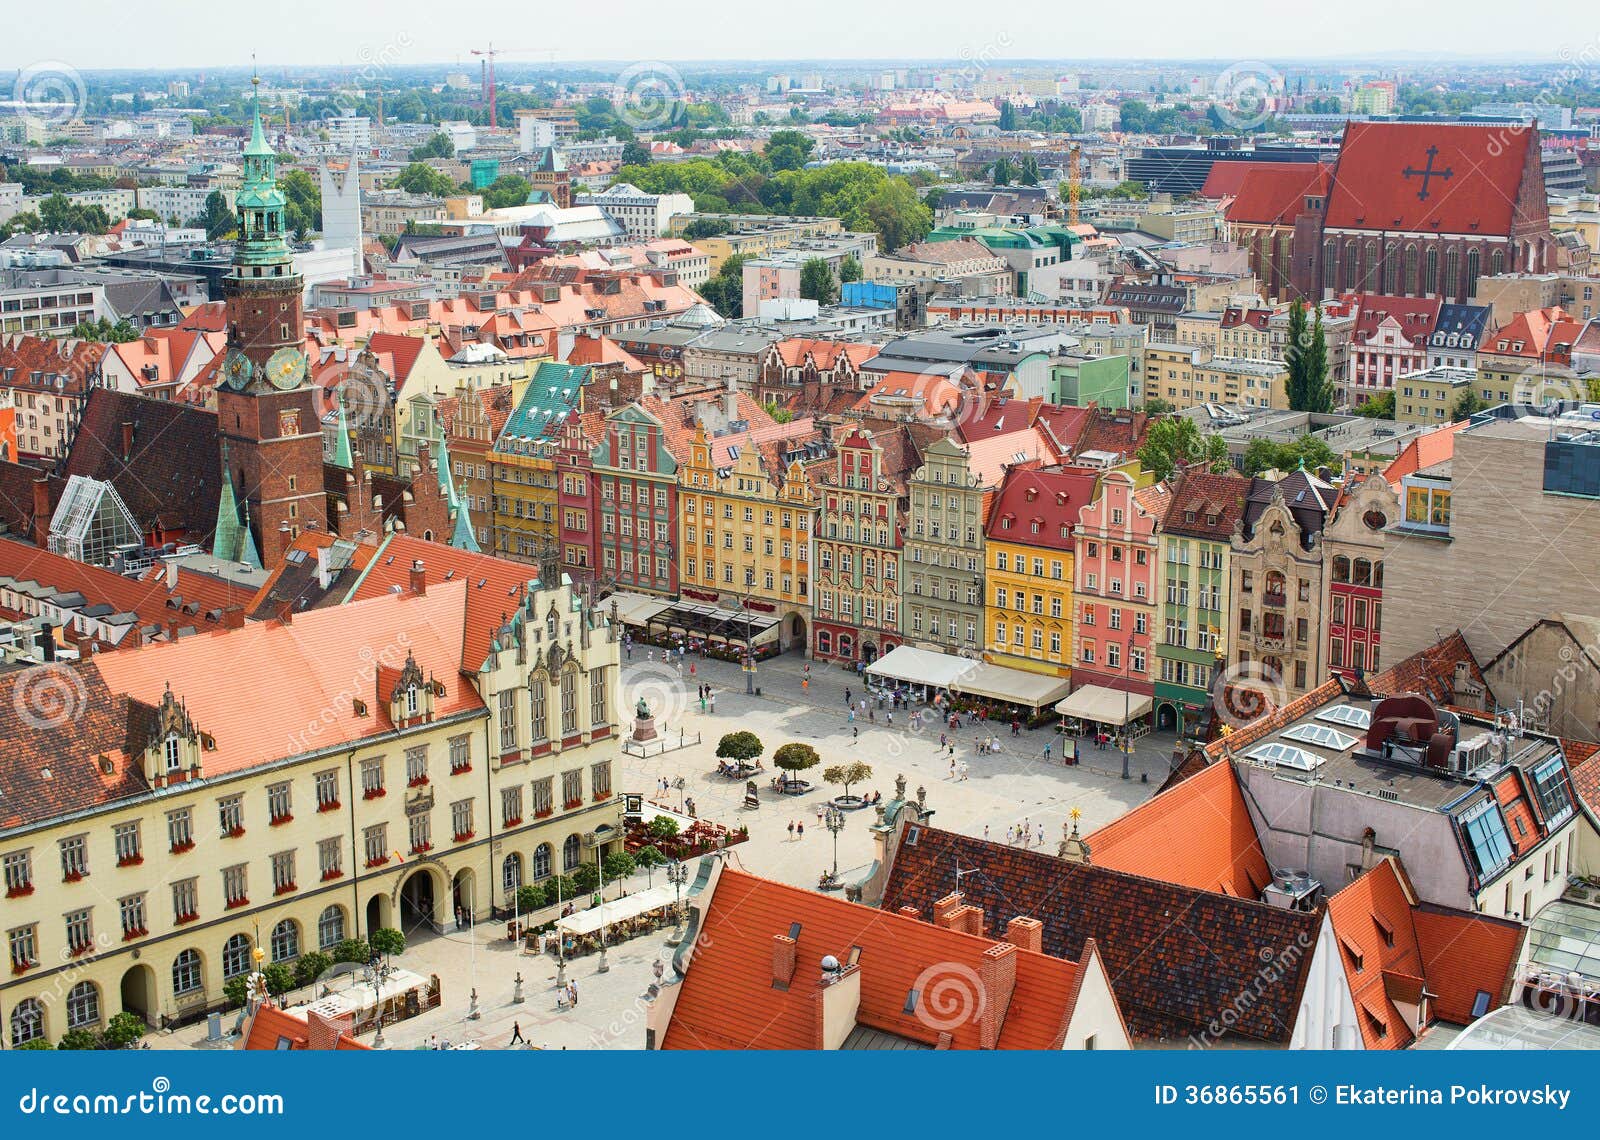 弗罗茨瓦夫市政厅 库存图片. 图片 包括有 街市, 蓝色, 场面, 天空, 中心, 文化, 都市, 室外 - 189600381